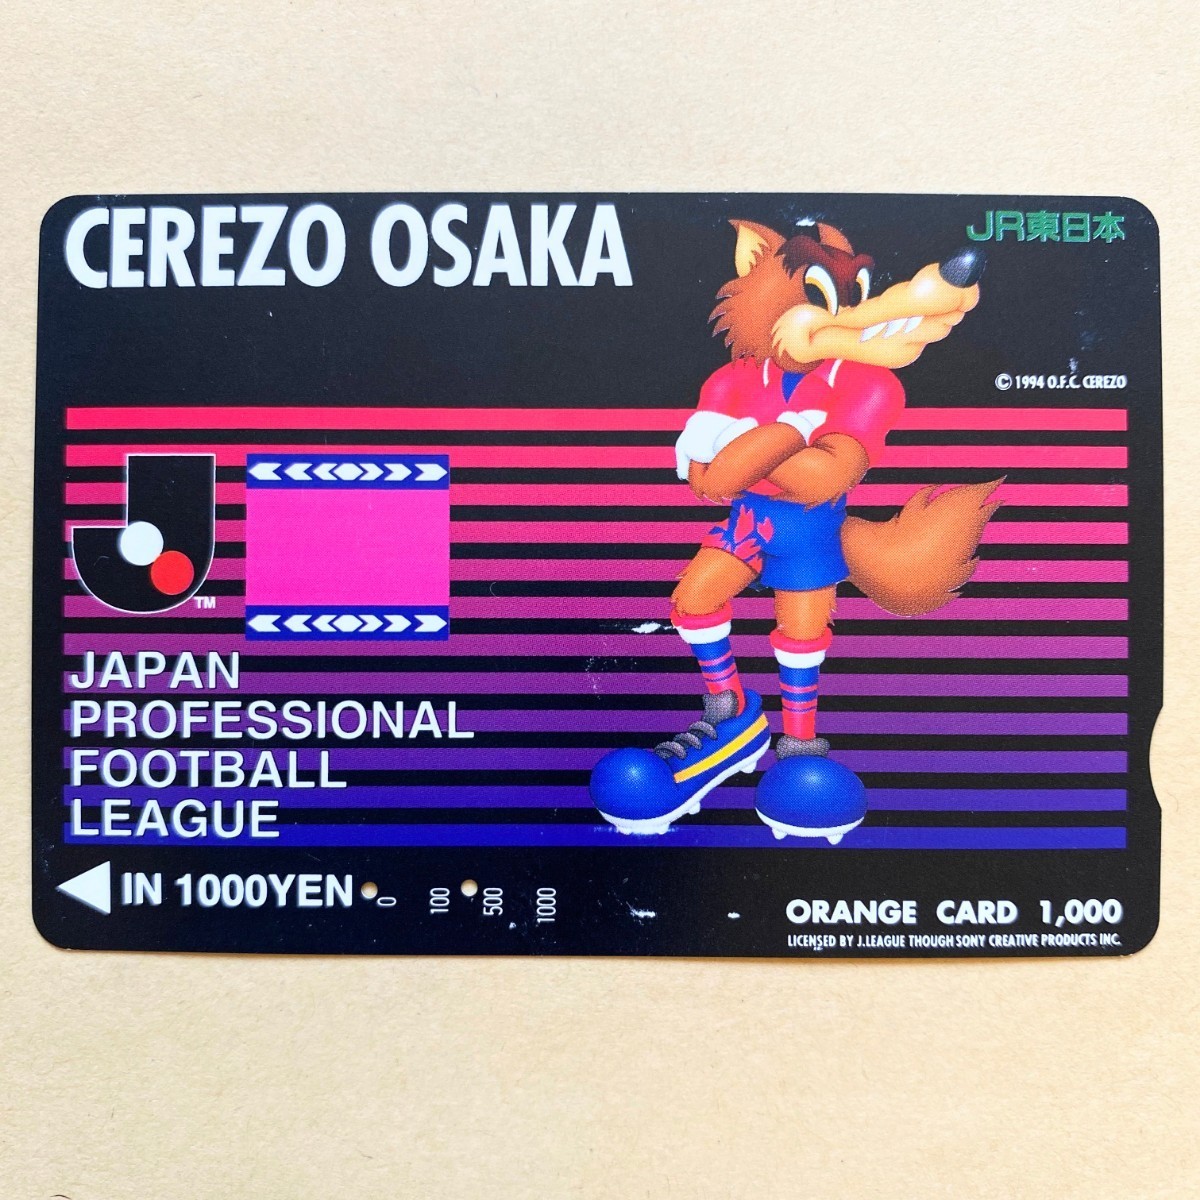 【使用済】 オレンジカード JR東日本 セレッソ大阪 ロビー Jリーグ サッカー_画像1